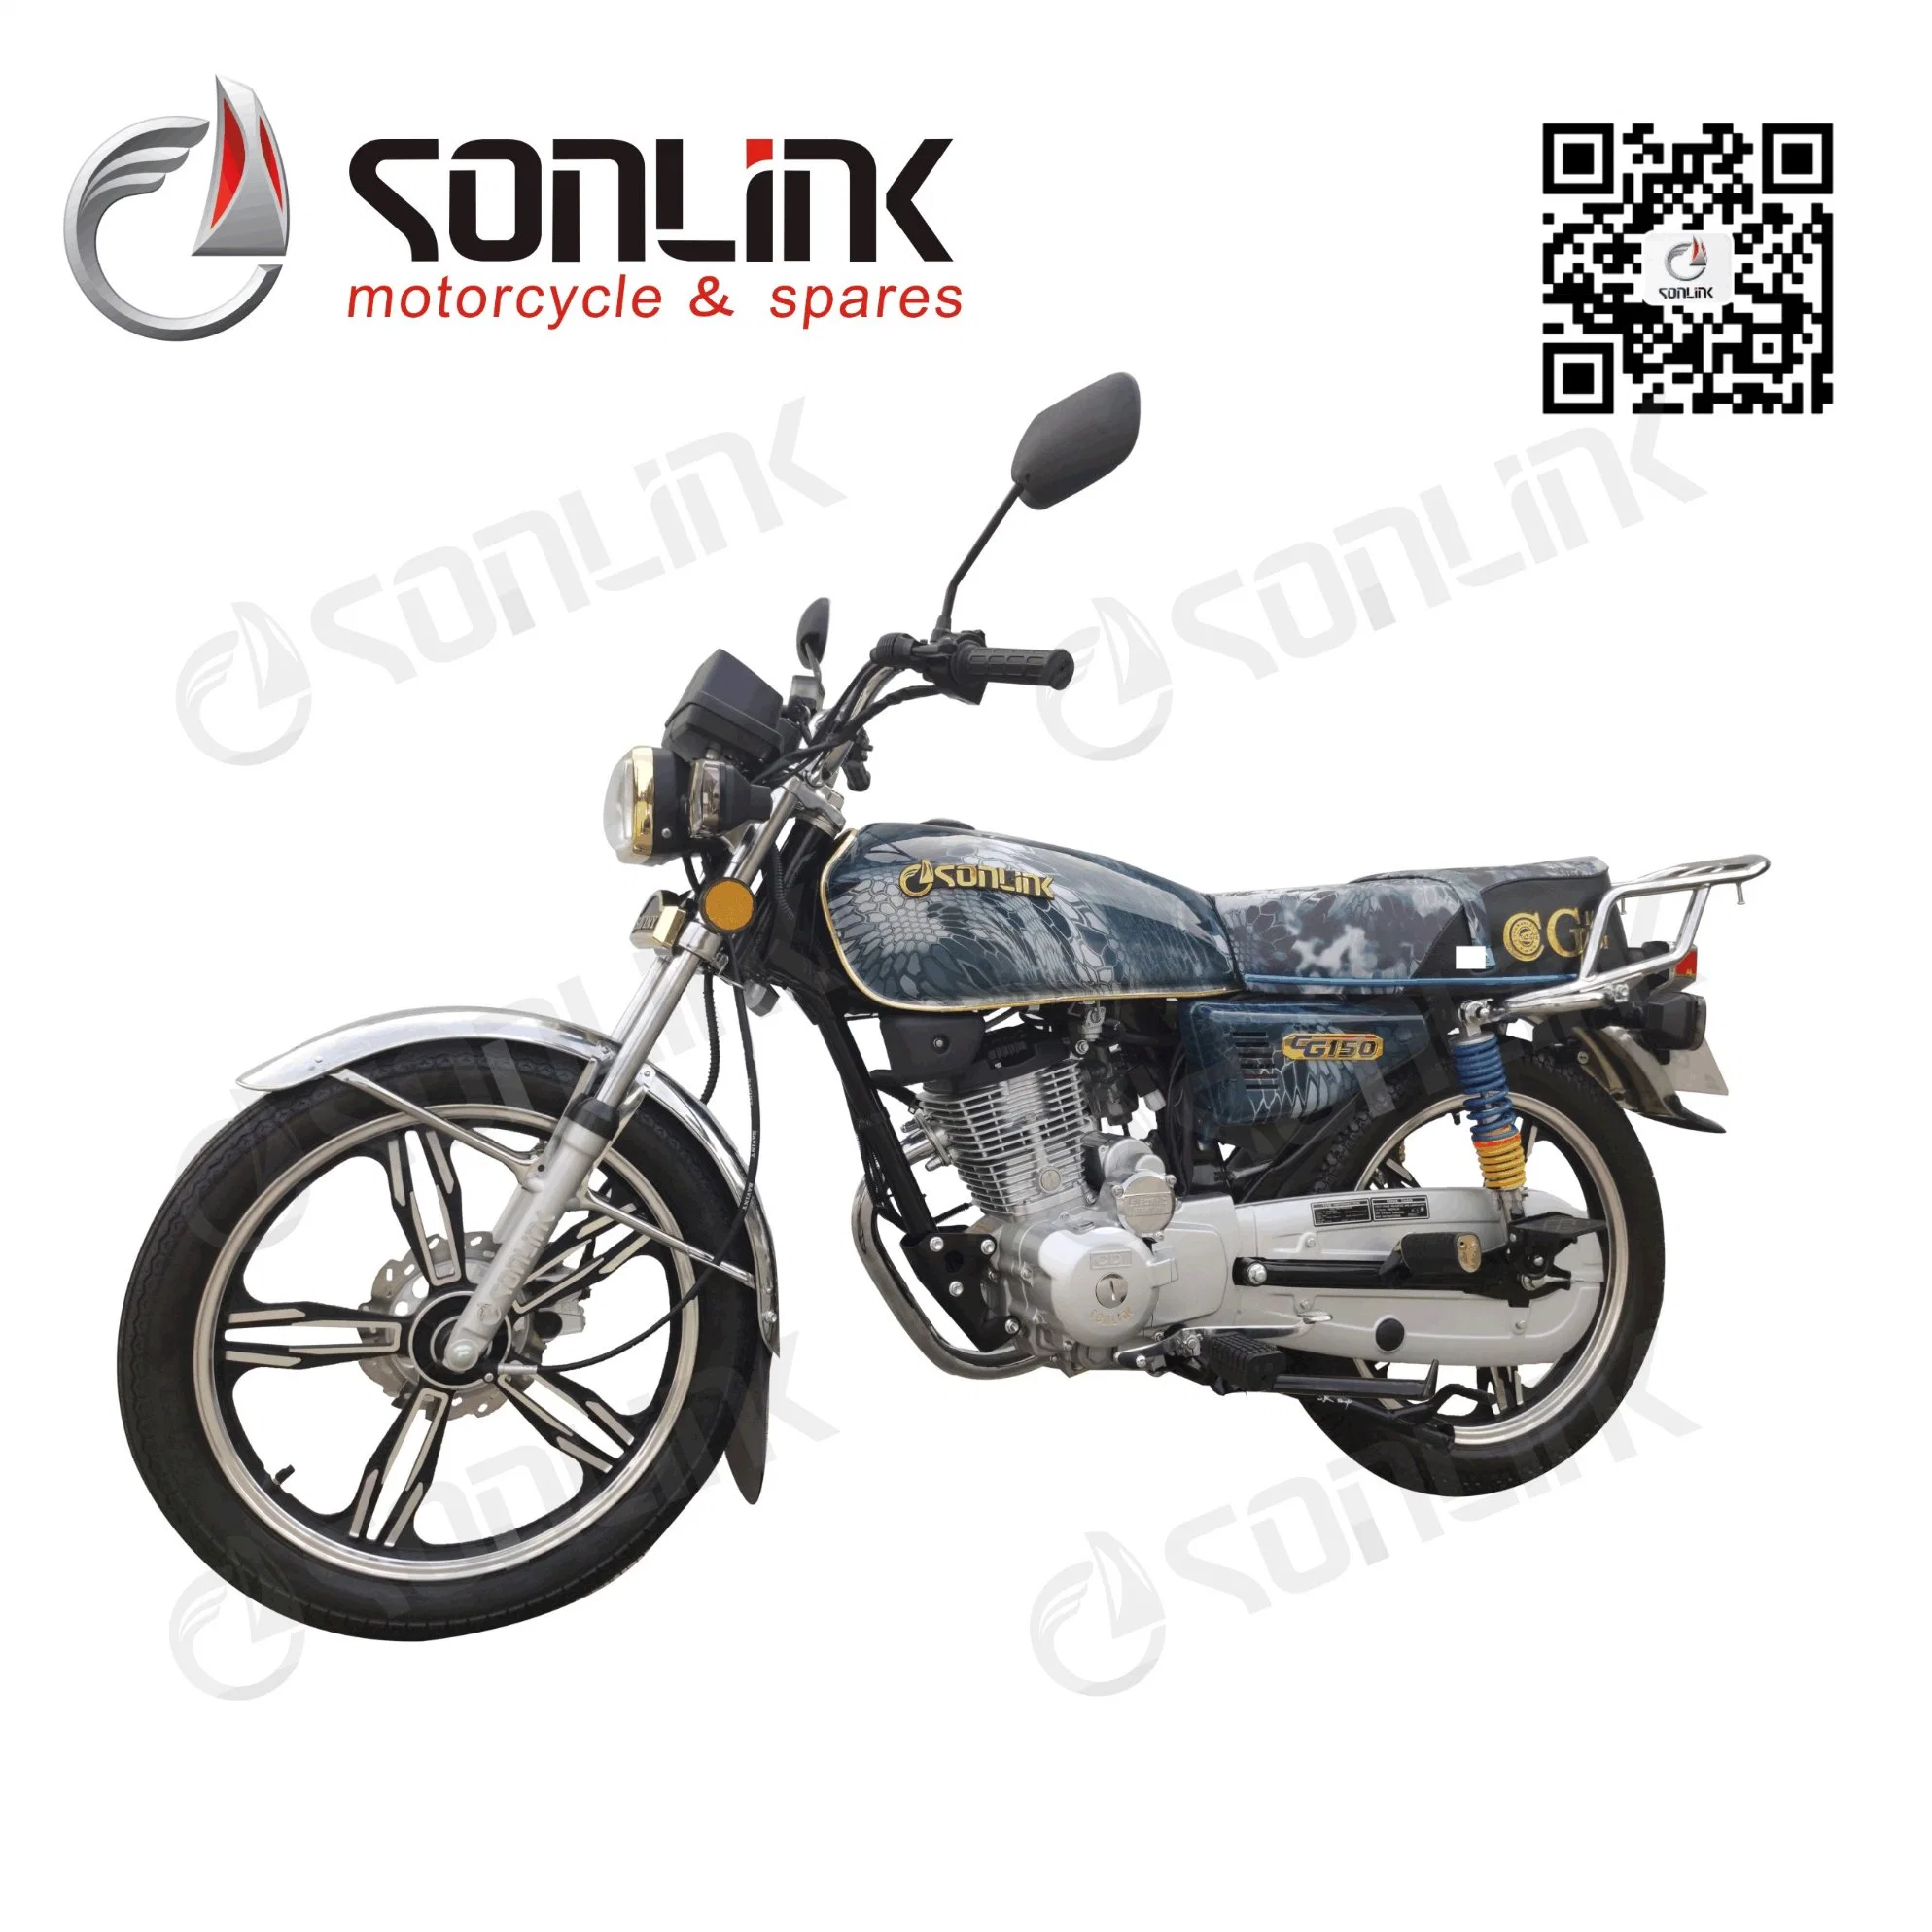 150cc Cg Motor duradero cómodo Cool Street Deportes coche / motocicleta